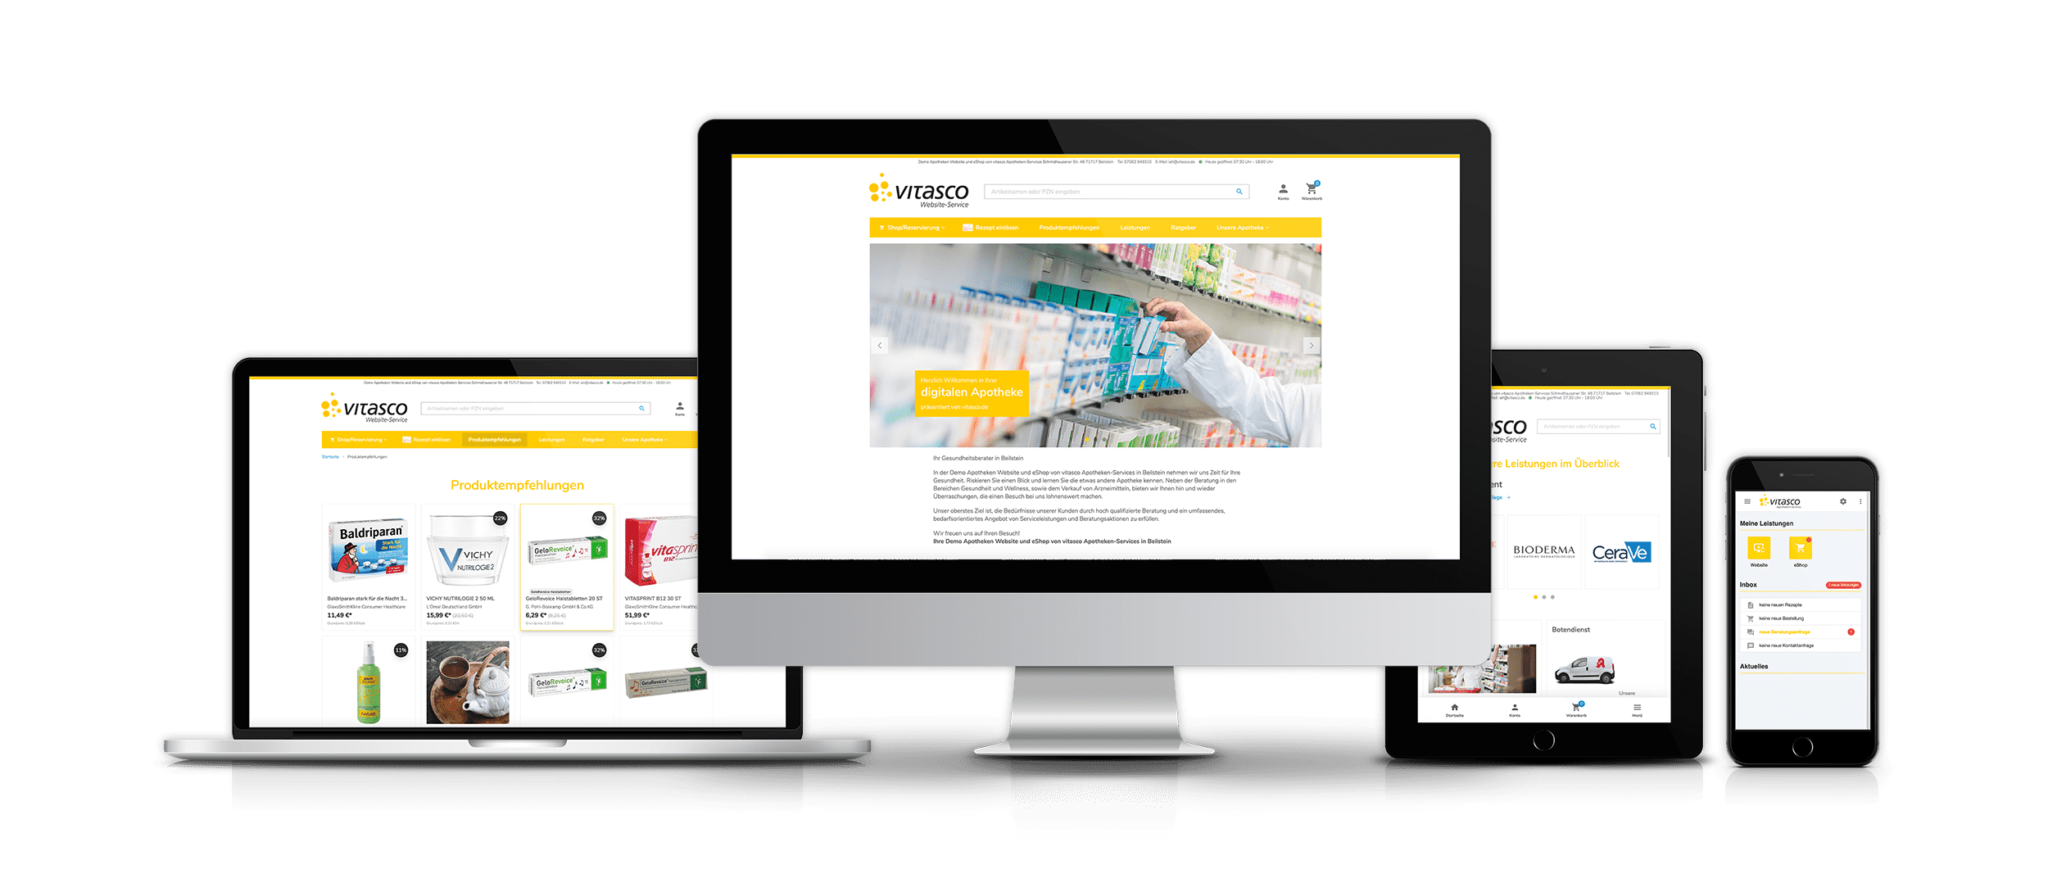 Apotheken Website & eShop - Digitale Leistungen der vitasco GmbH auf mehreren Geräten angezeigt